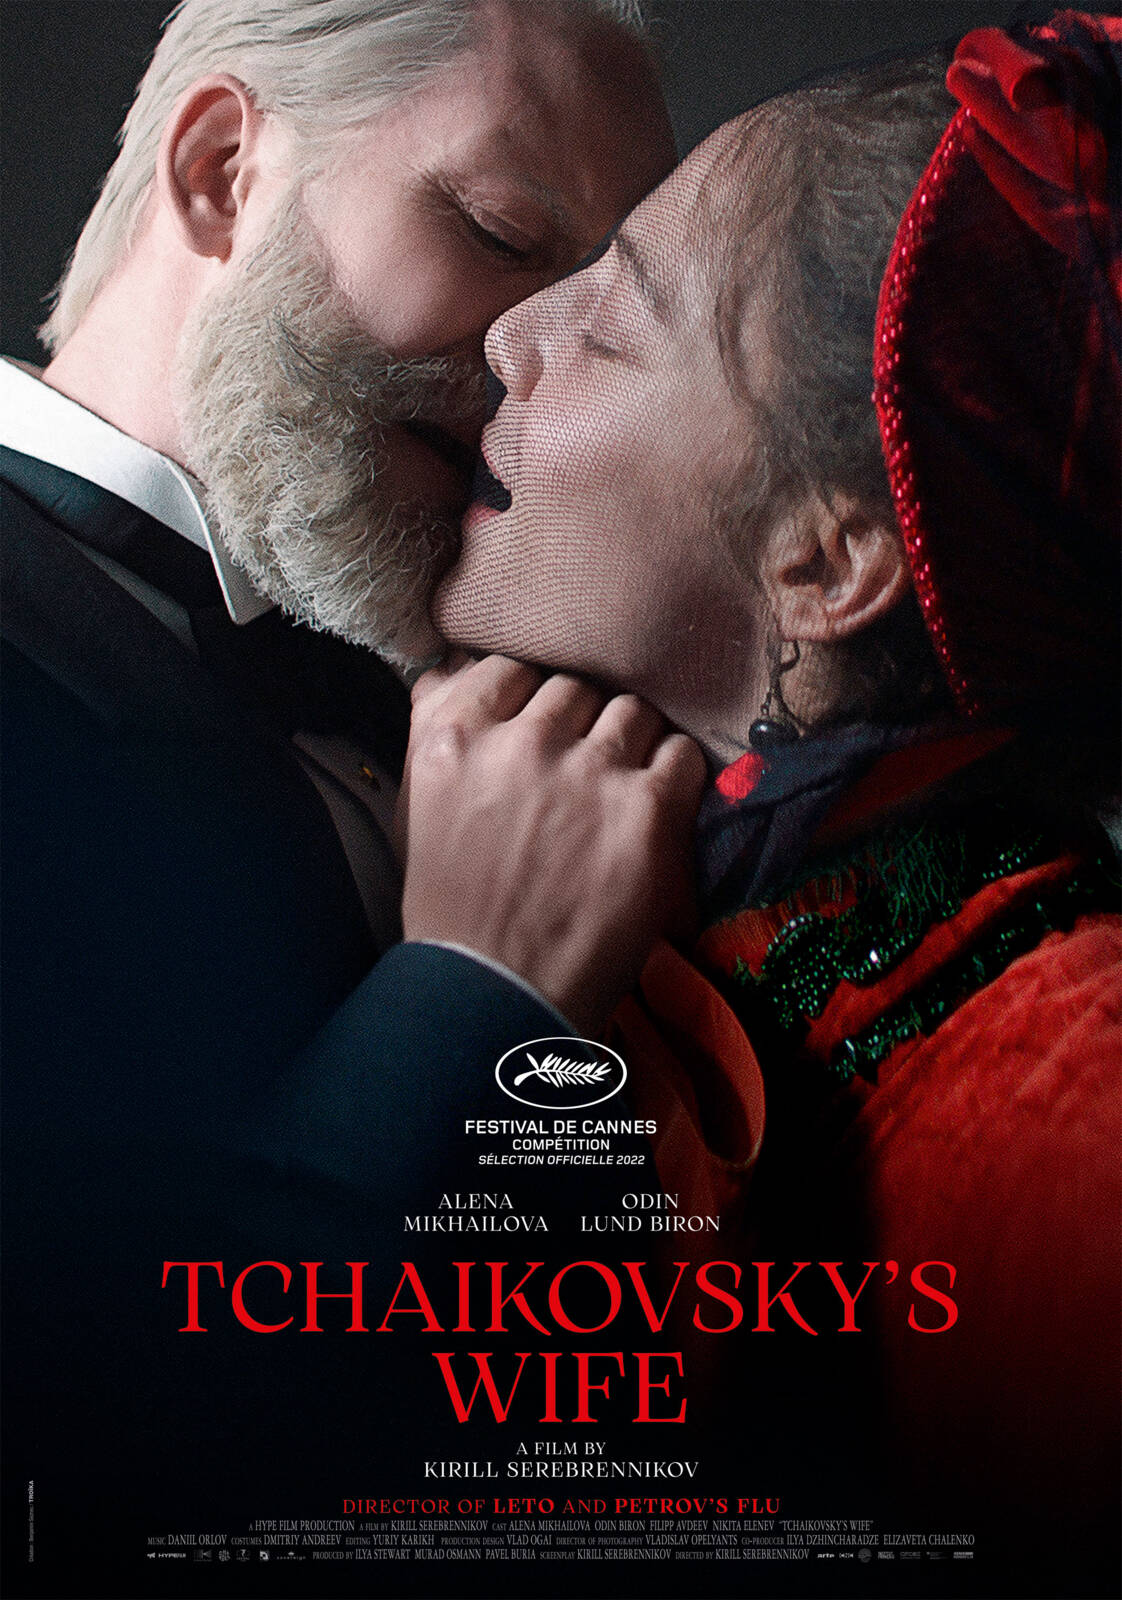 Tchaikovsky's wife full movie